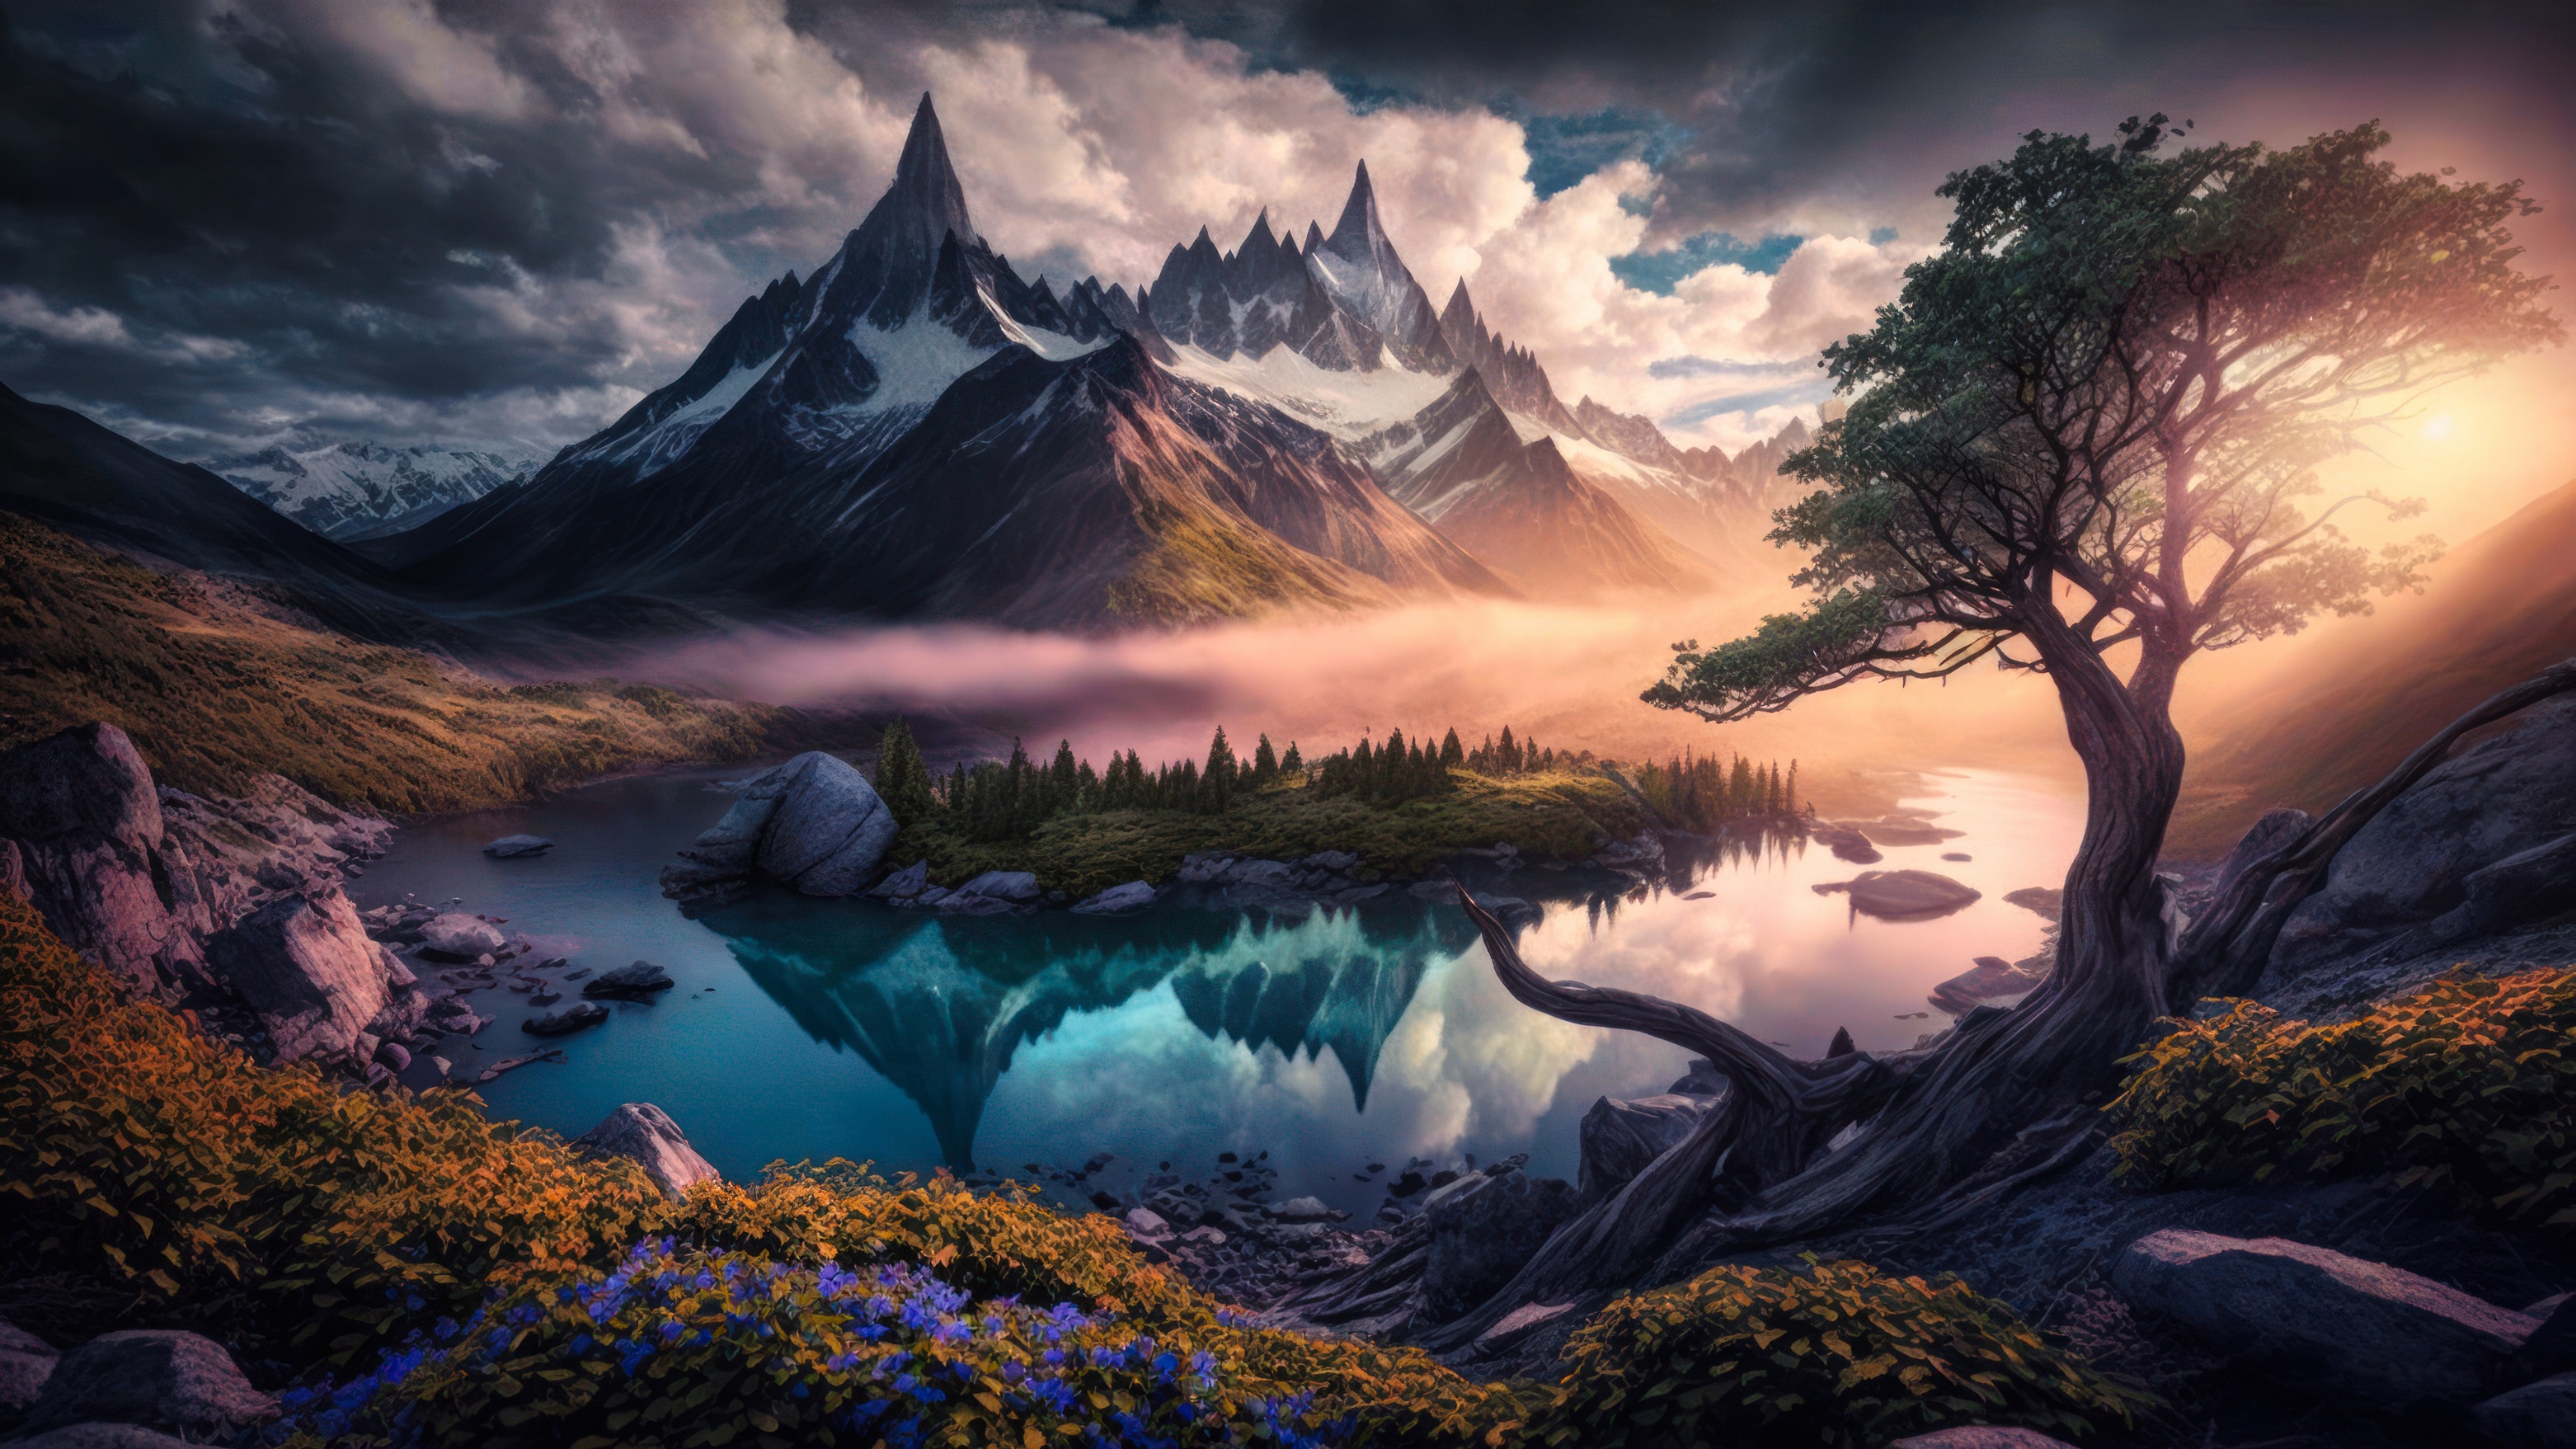 Фантастический пейзаж горного озера с островком посредине, на фоне заснеженных гор, тумана и облачного неба